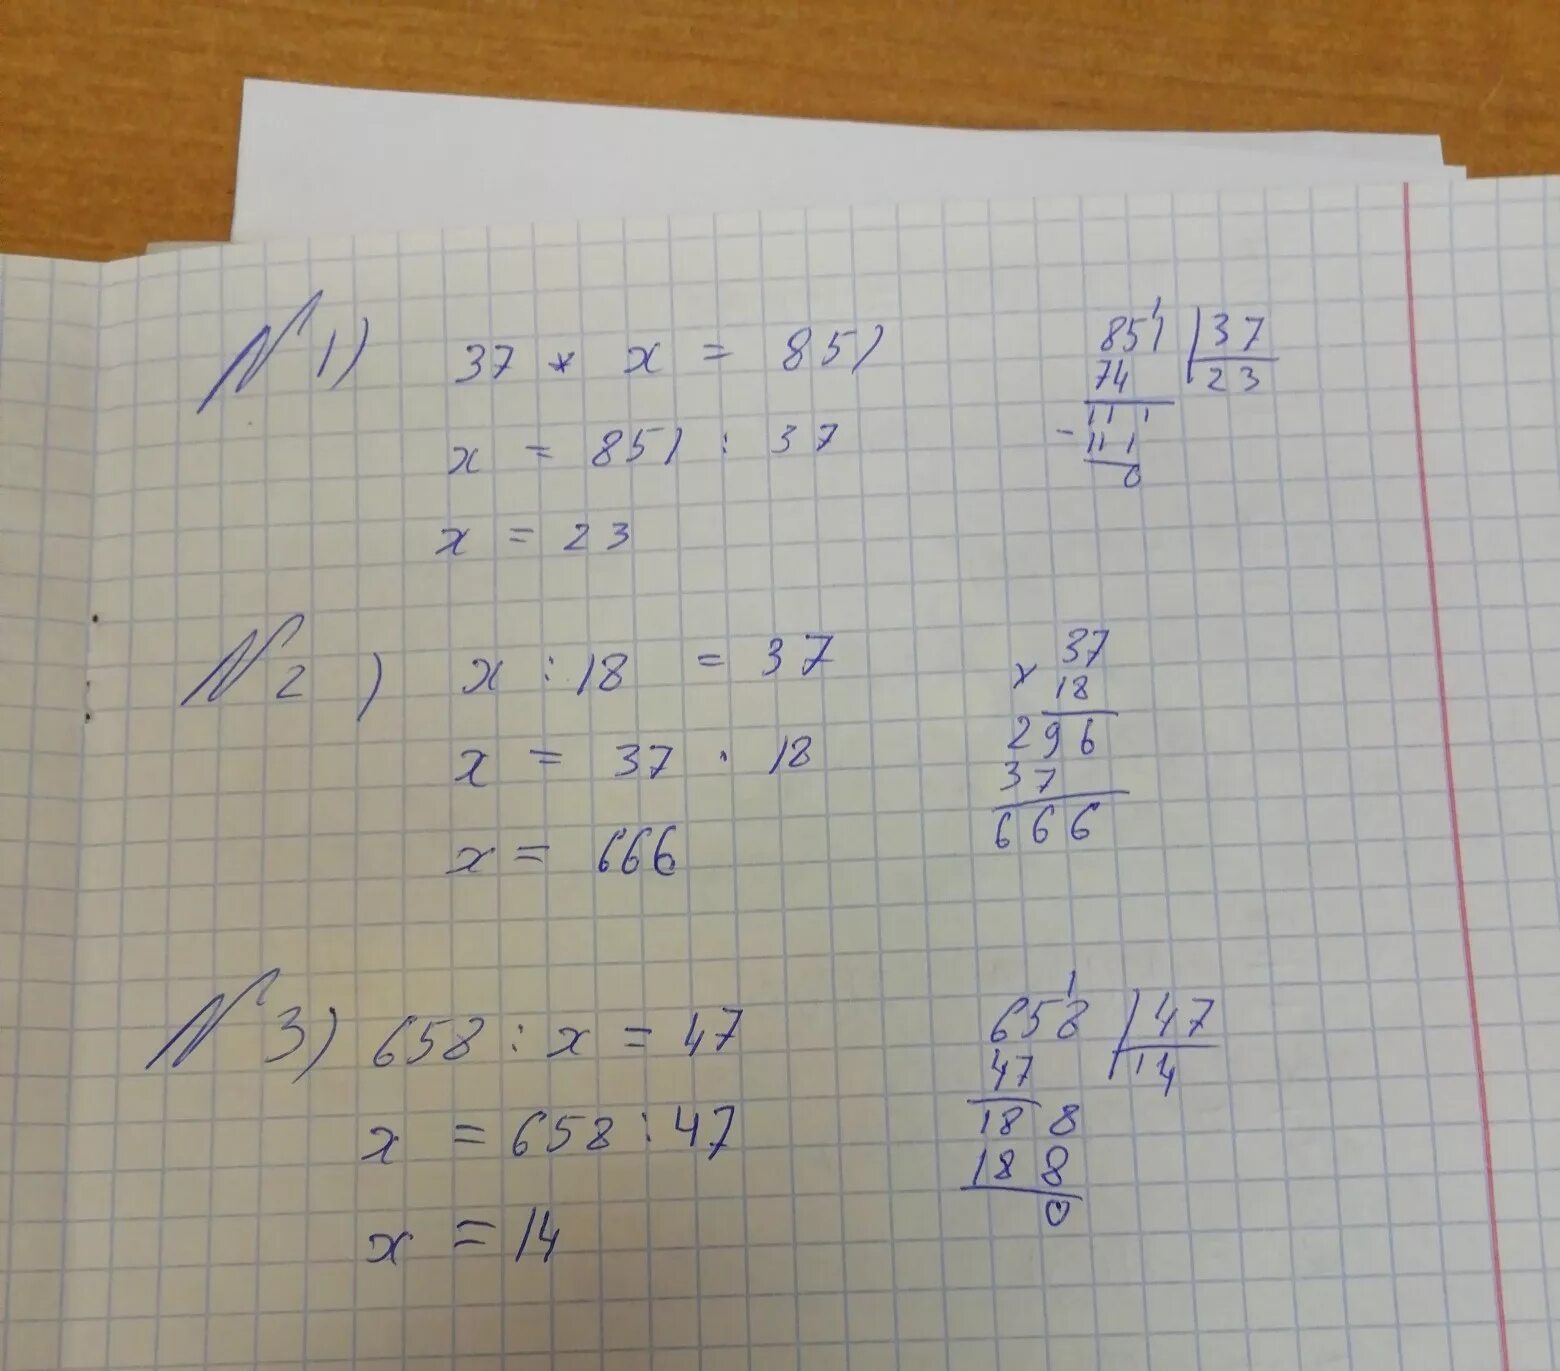 Решение уравнения x-2=3x+18. /X/ =18 решение уравнений. X2-x=1/2 решение уравнения. Уравнение x-18 =3. X 3 1 3x 23